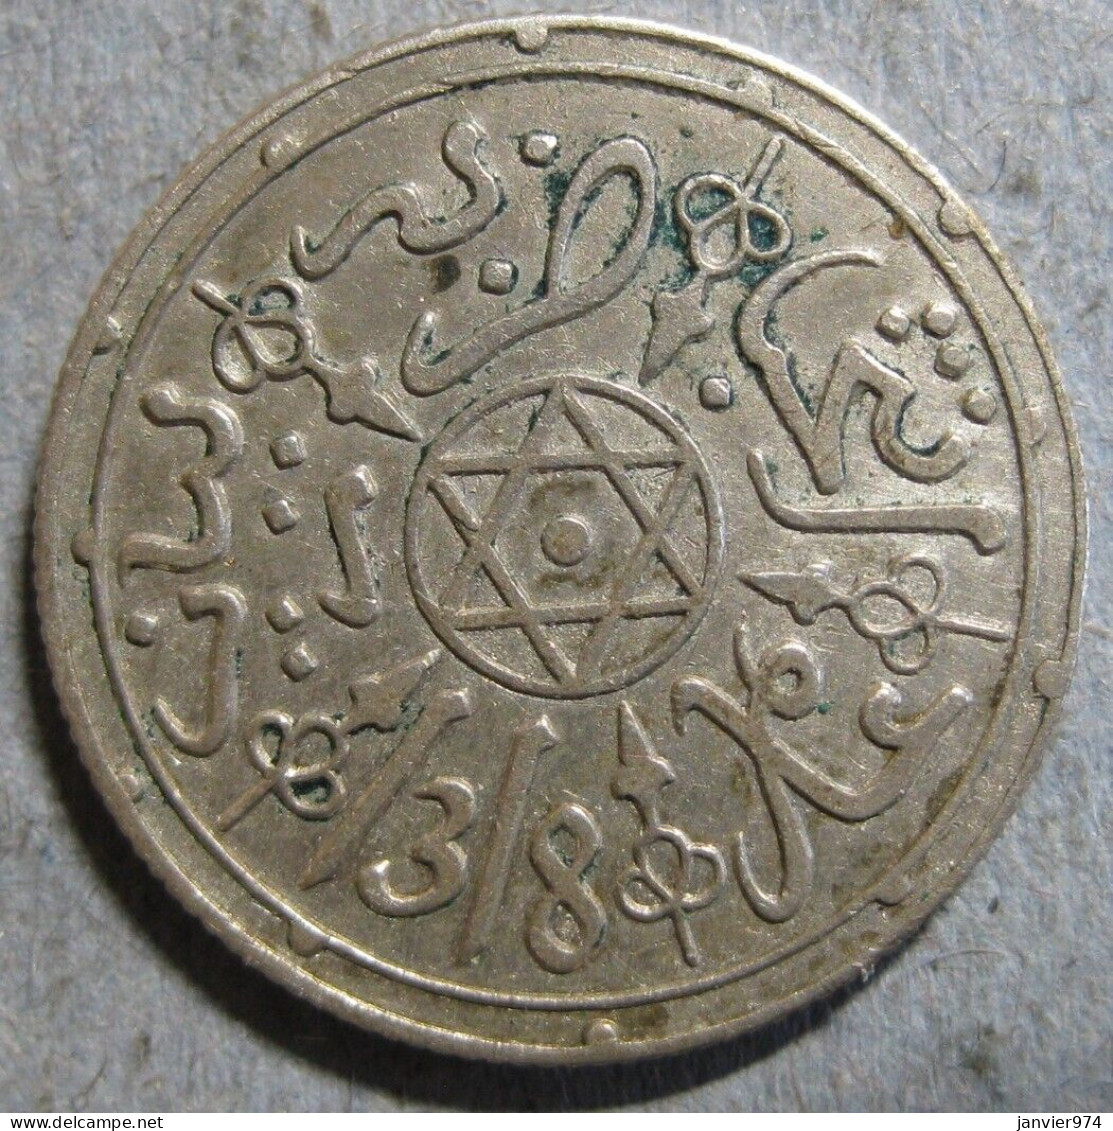 Maroc 1 Dirham (1/10 Rial) AH 1318 - 1901 Paris . En Argent, Lec# 127 - Y# 10.2Maroc  - Maroc